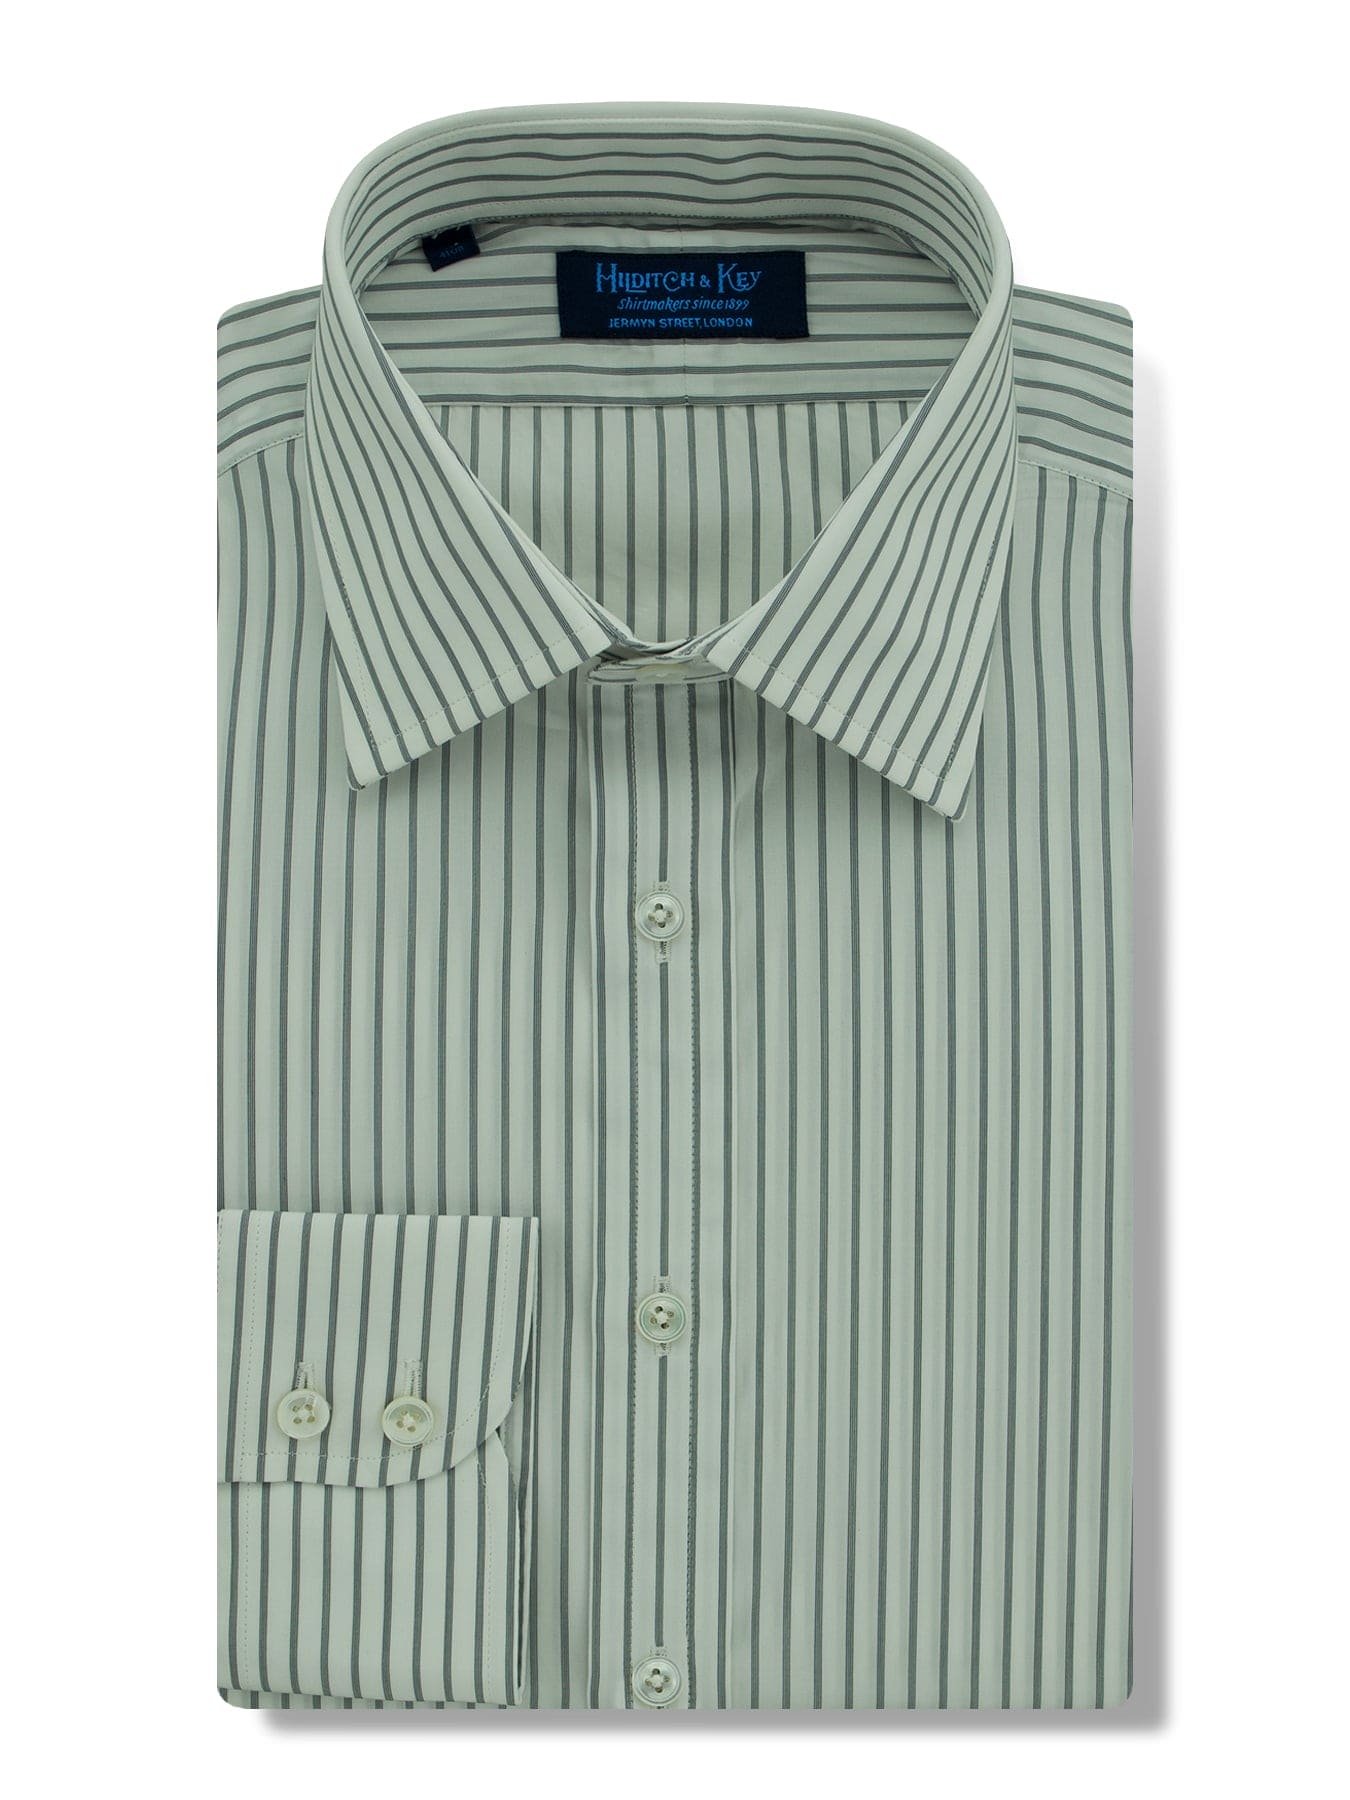 Contemporary Fit, Classic Collar, Two Button Cuff in Black & White Stripe